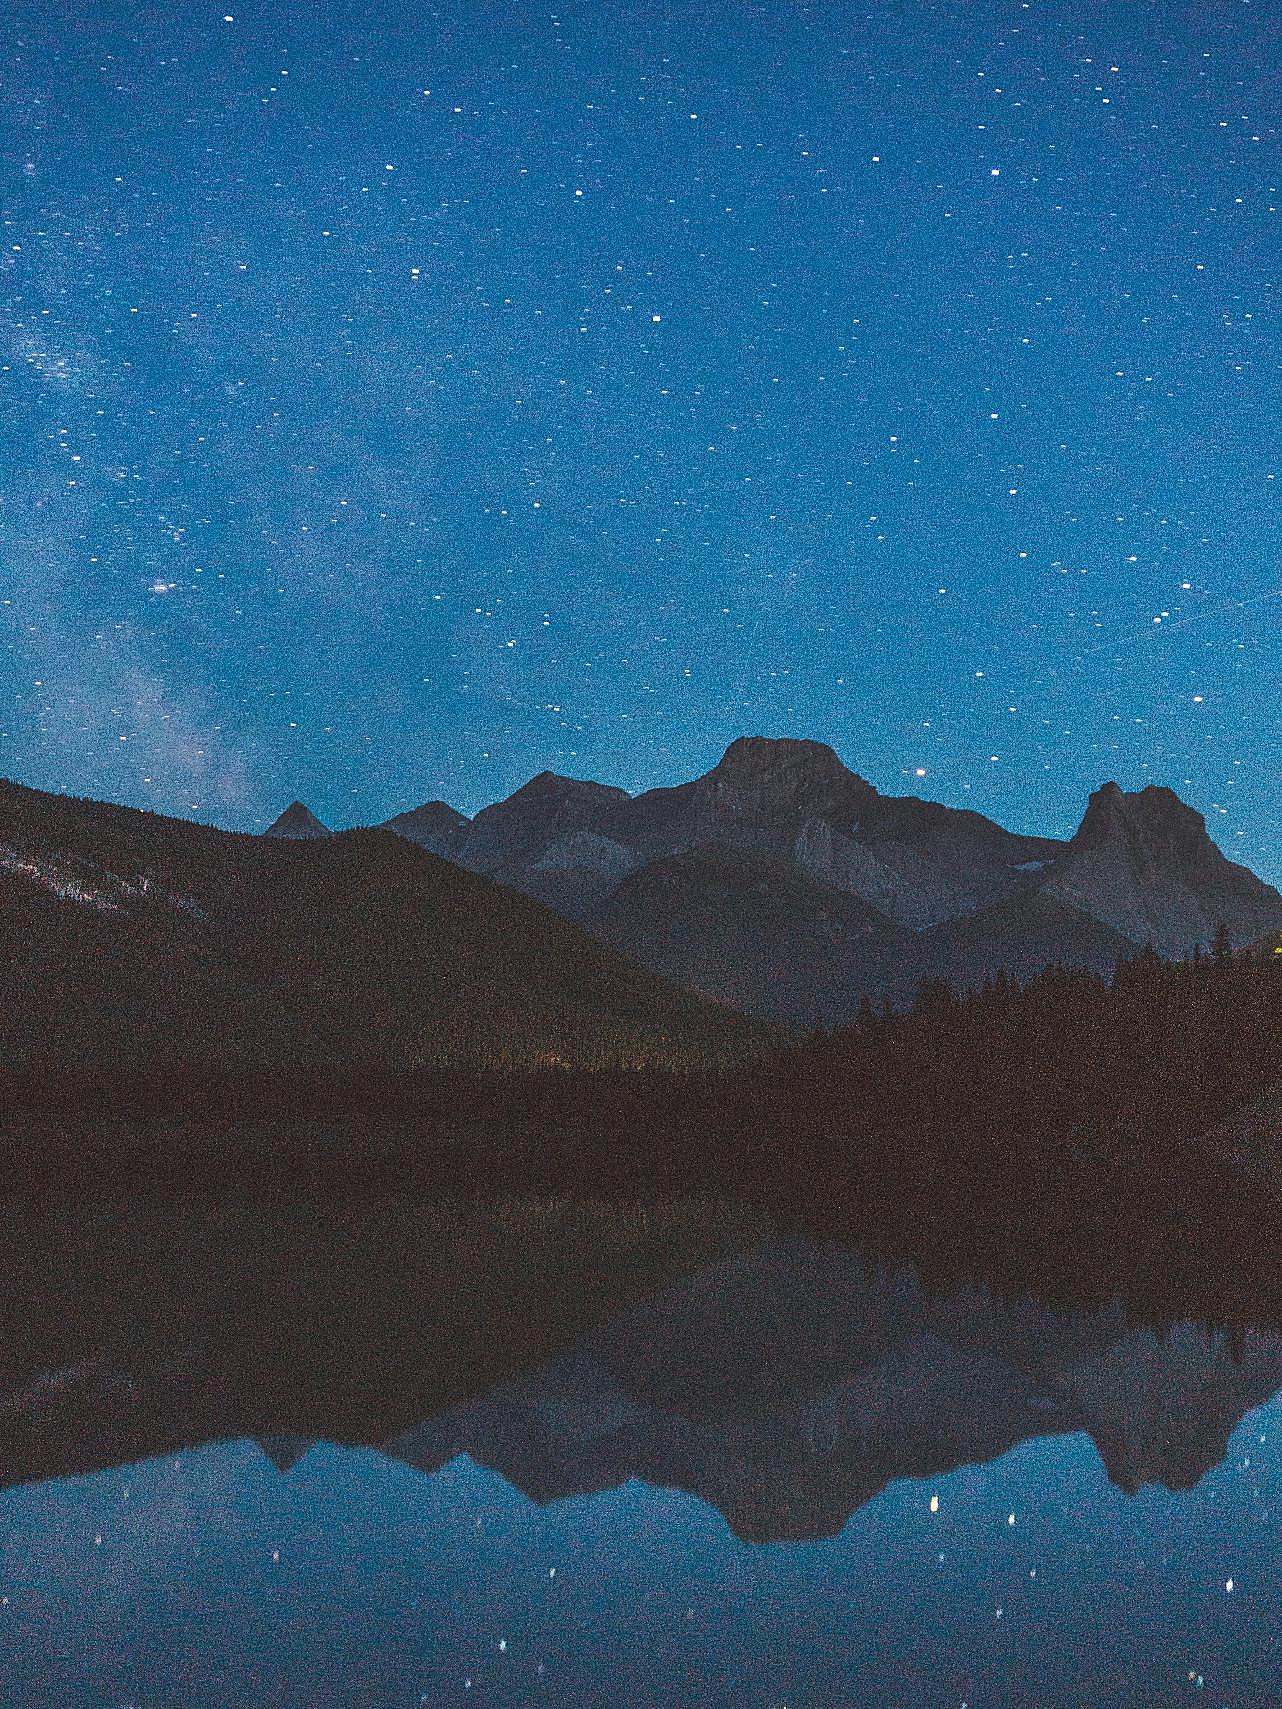 湖泊倒影宁静夜景图片摄影